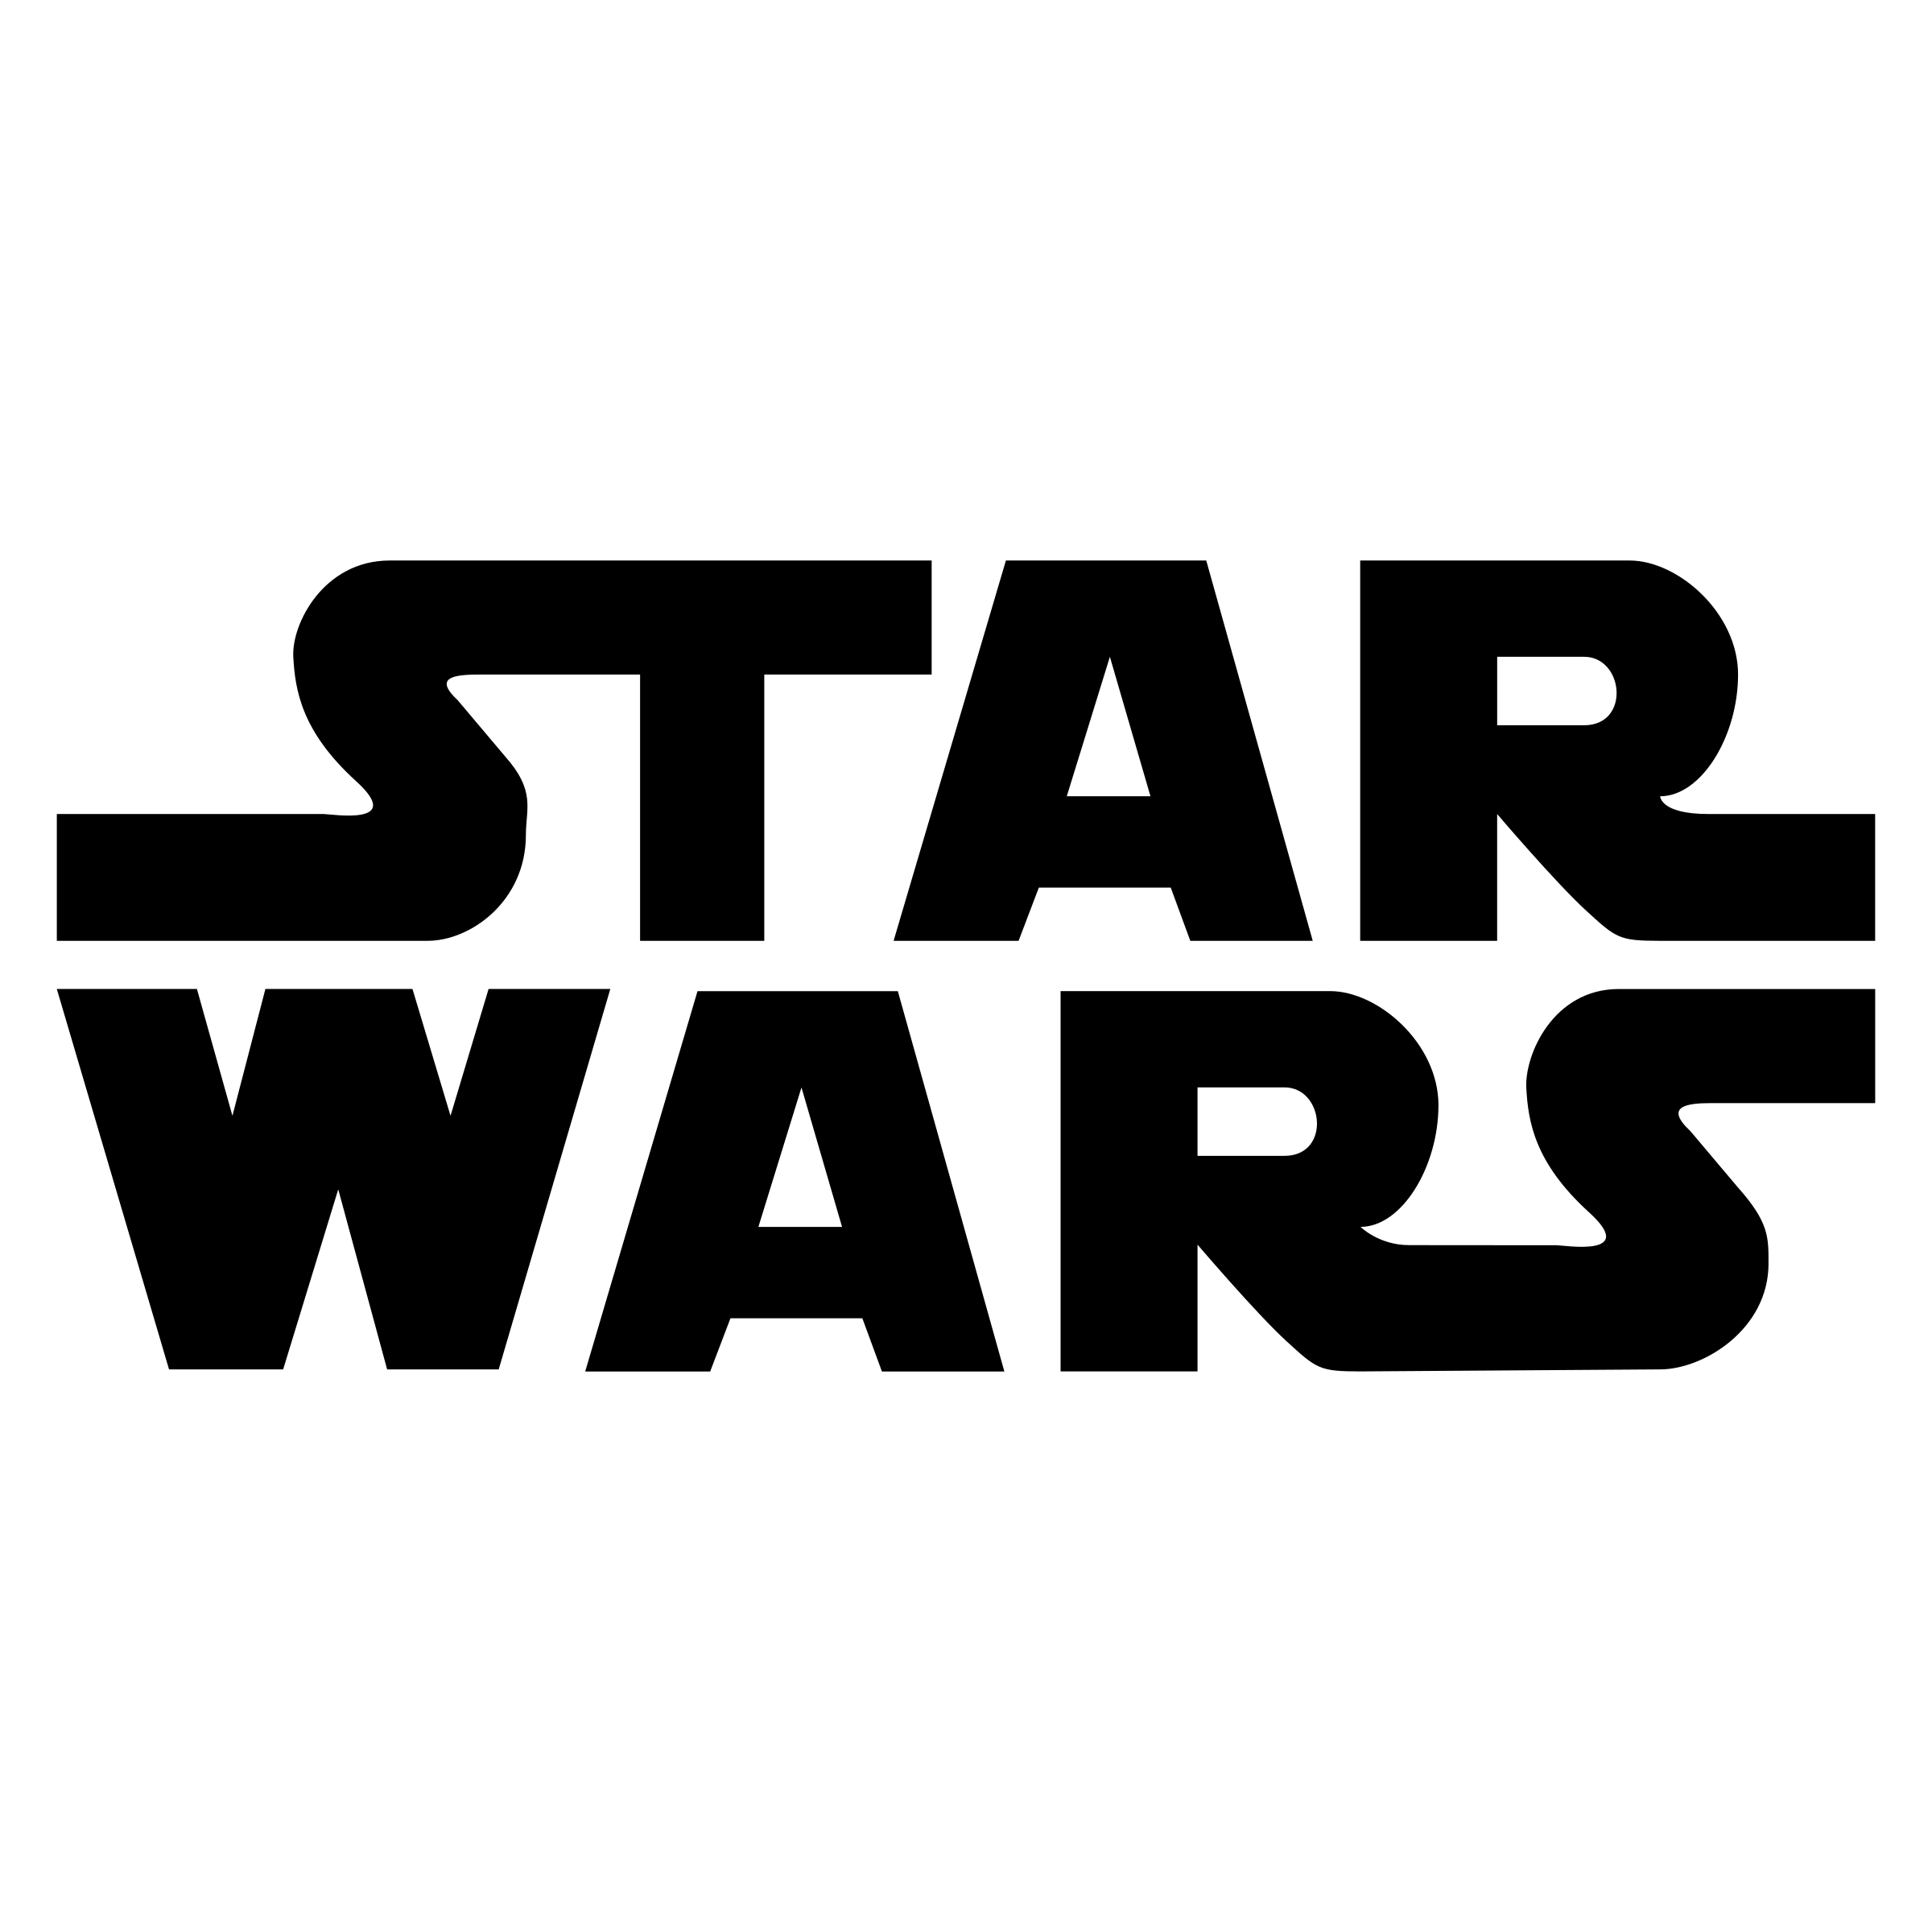 Звездные войны logo PNG скачать бесплатно